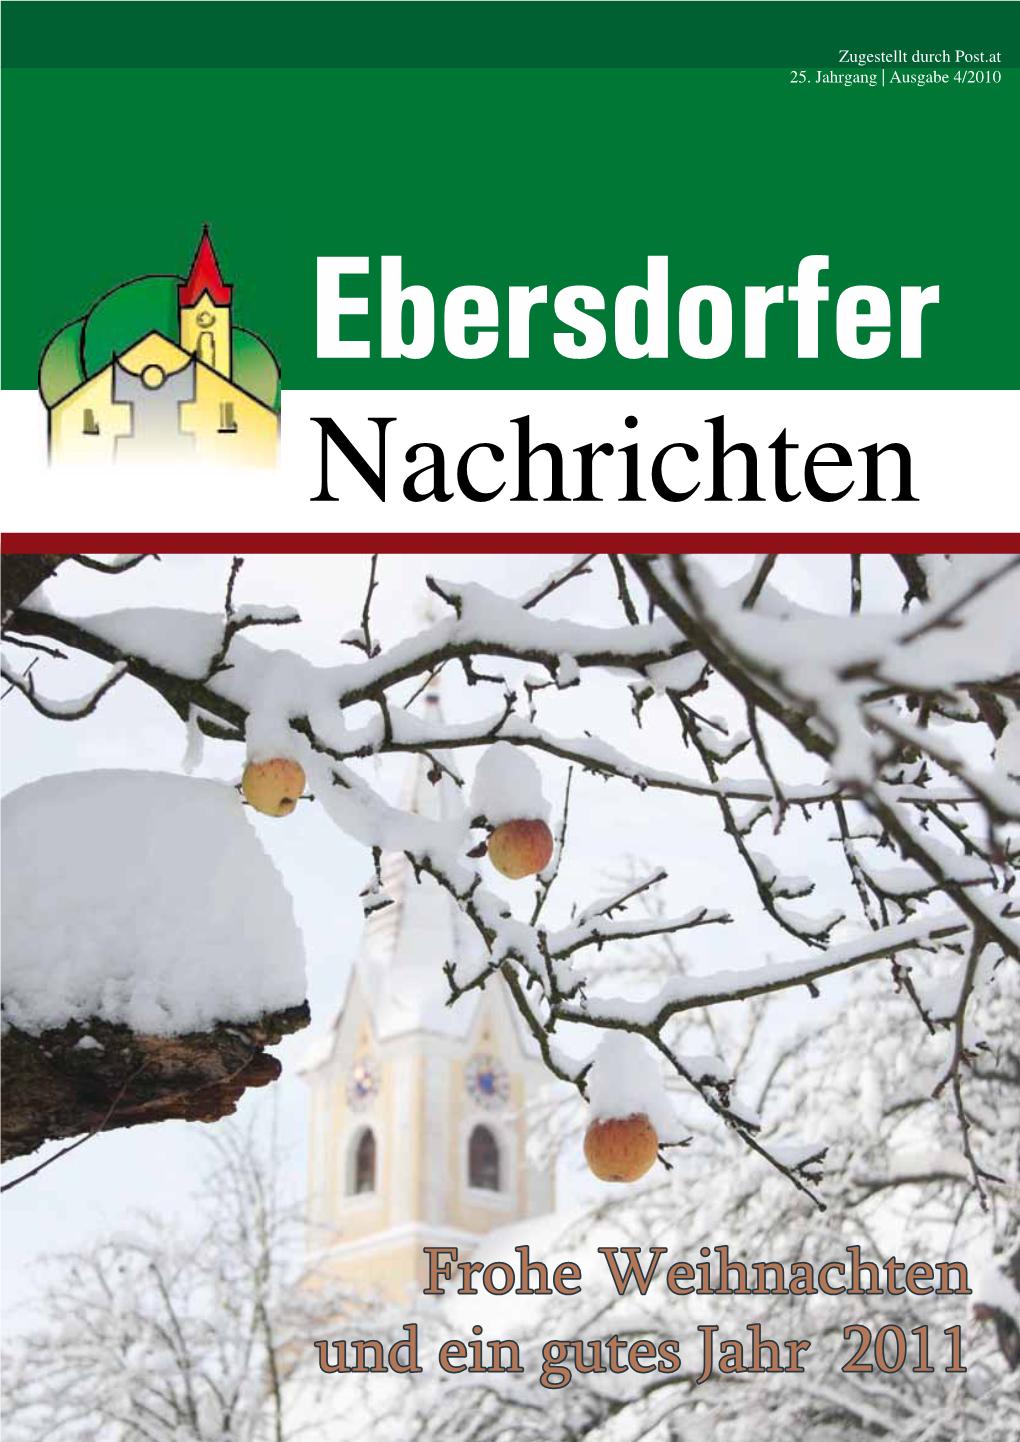 Frohe Weihnachten Und Ein Gutes Jahr 2011 Ebersdorfer 2 GEMEINDE Nachrichten Dez 10